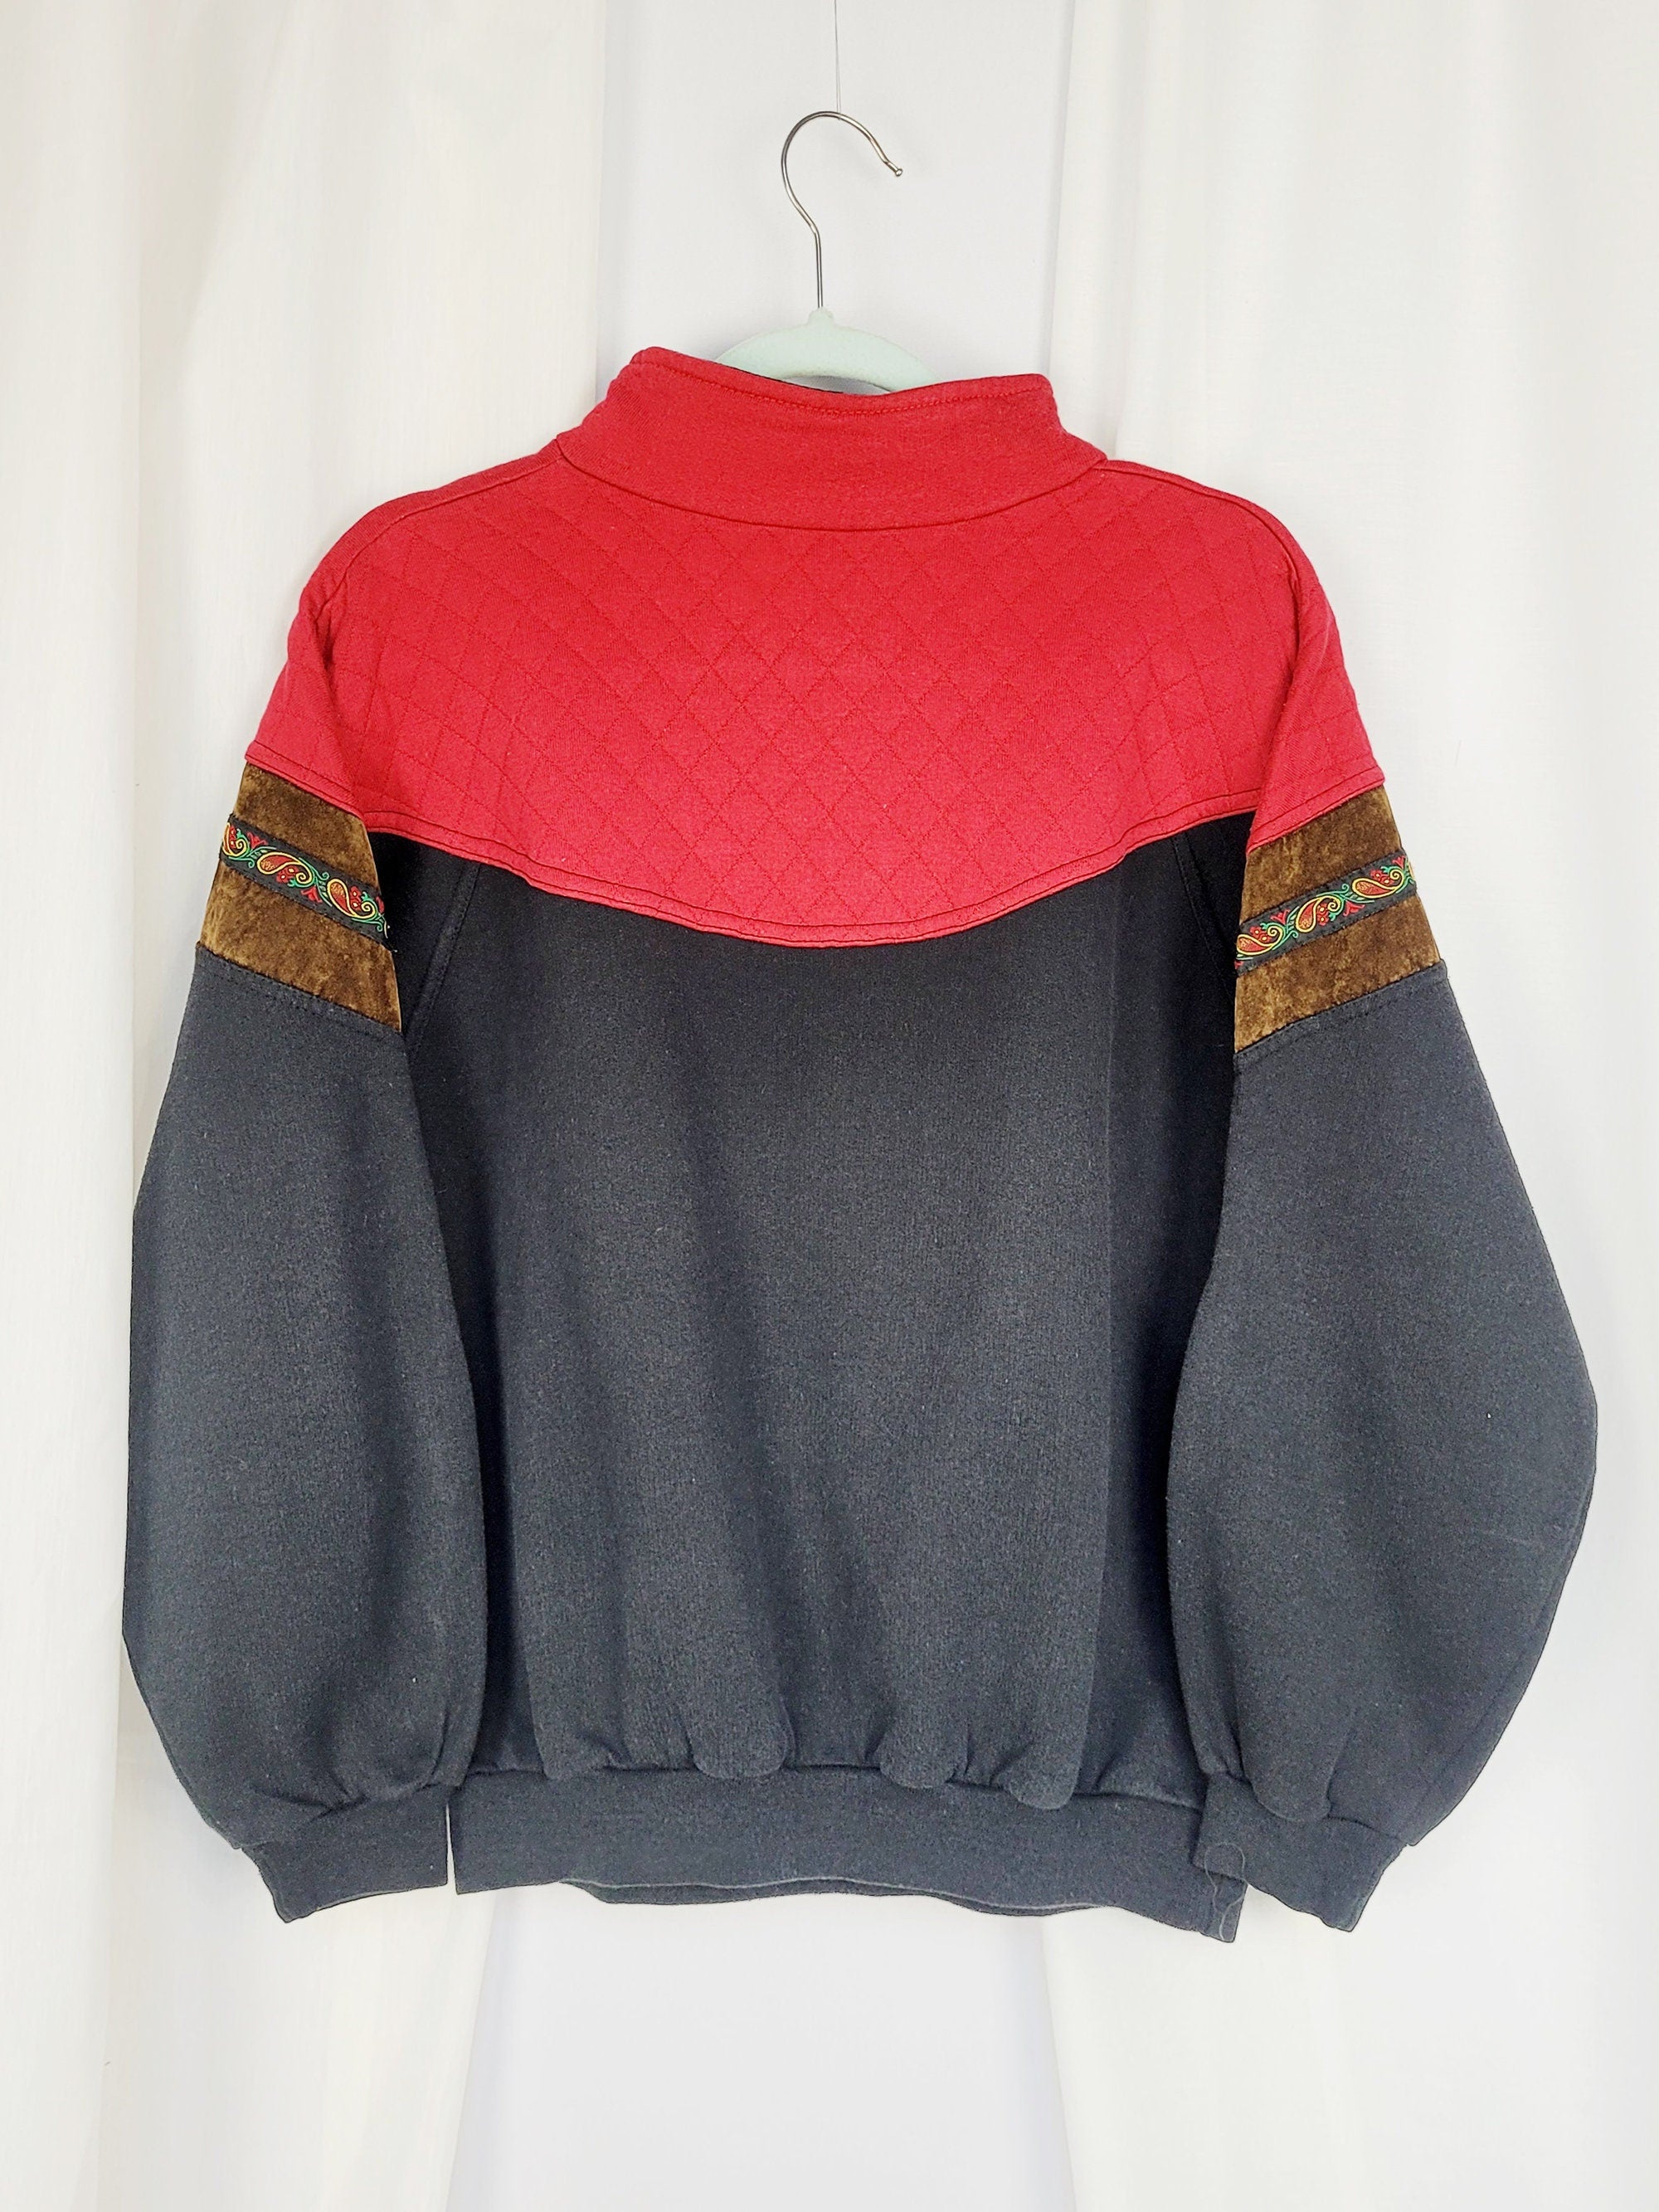 Vintage 90s red black sports grunge quarter zip sweatshirt